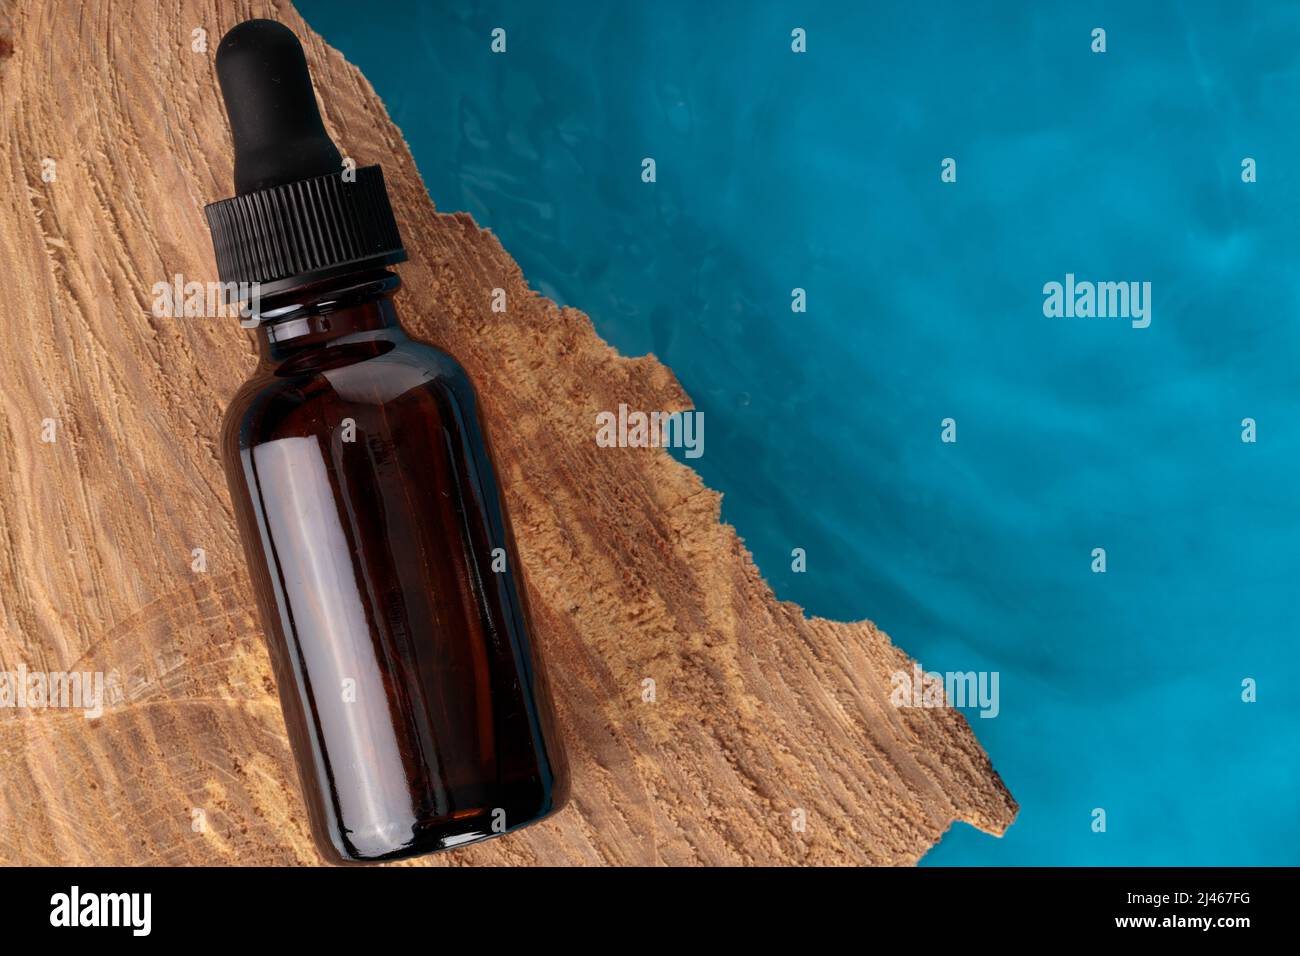 Kosmetikflasche mit Brandstiftung, Top Shot. Braune Flasche auf Holz, blaues Wasser. Platz für Text. Stockfoto